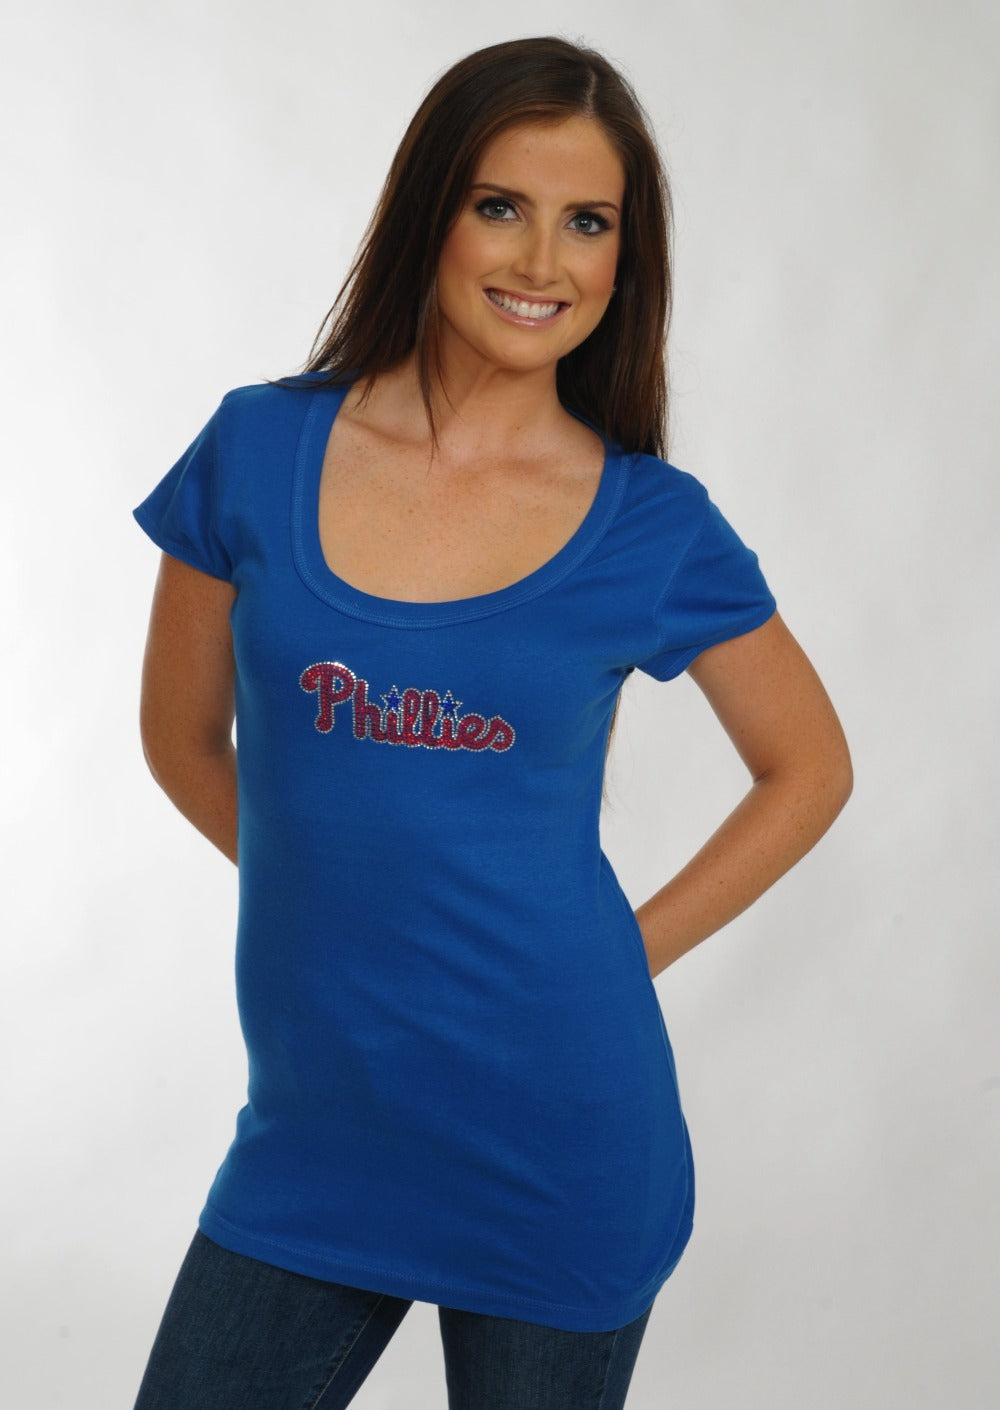 women's blue phillies jersey